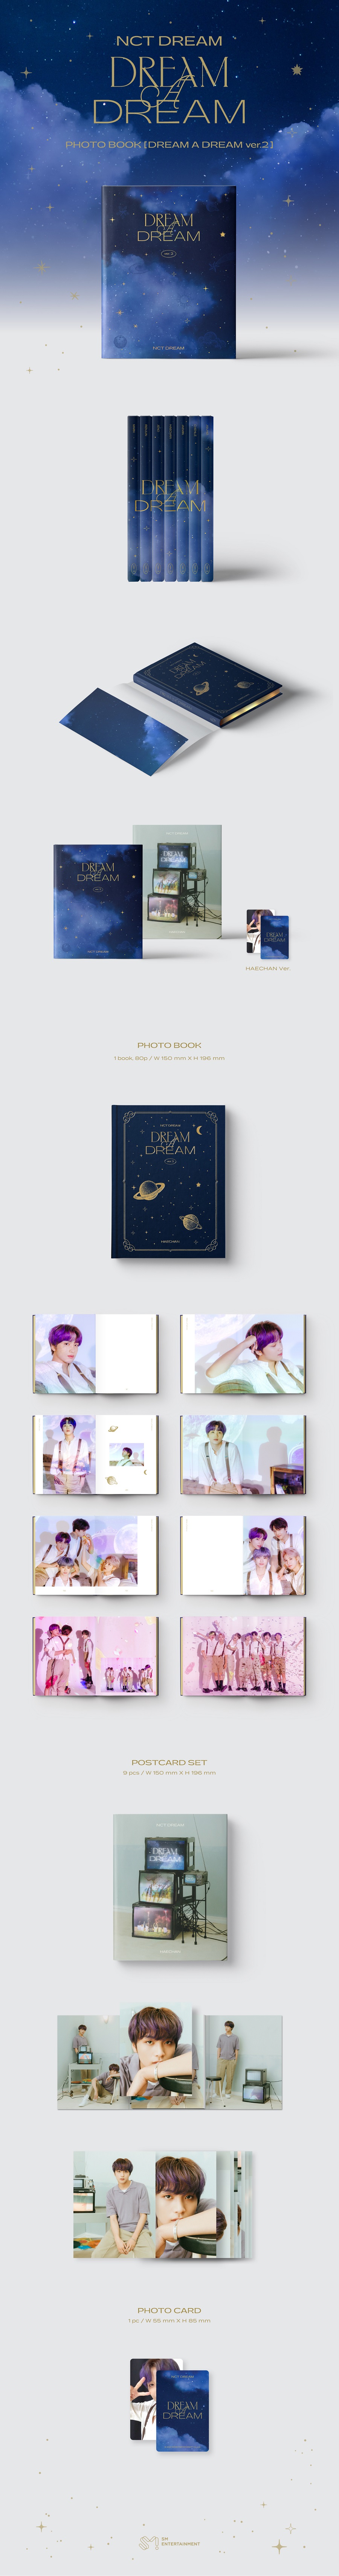 NCT DREAM - DREAM A DREAM Photobook Ver.2 [해찬 Ver.]